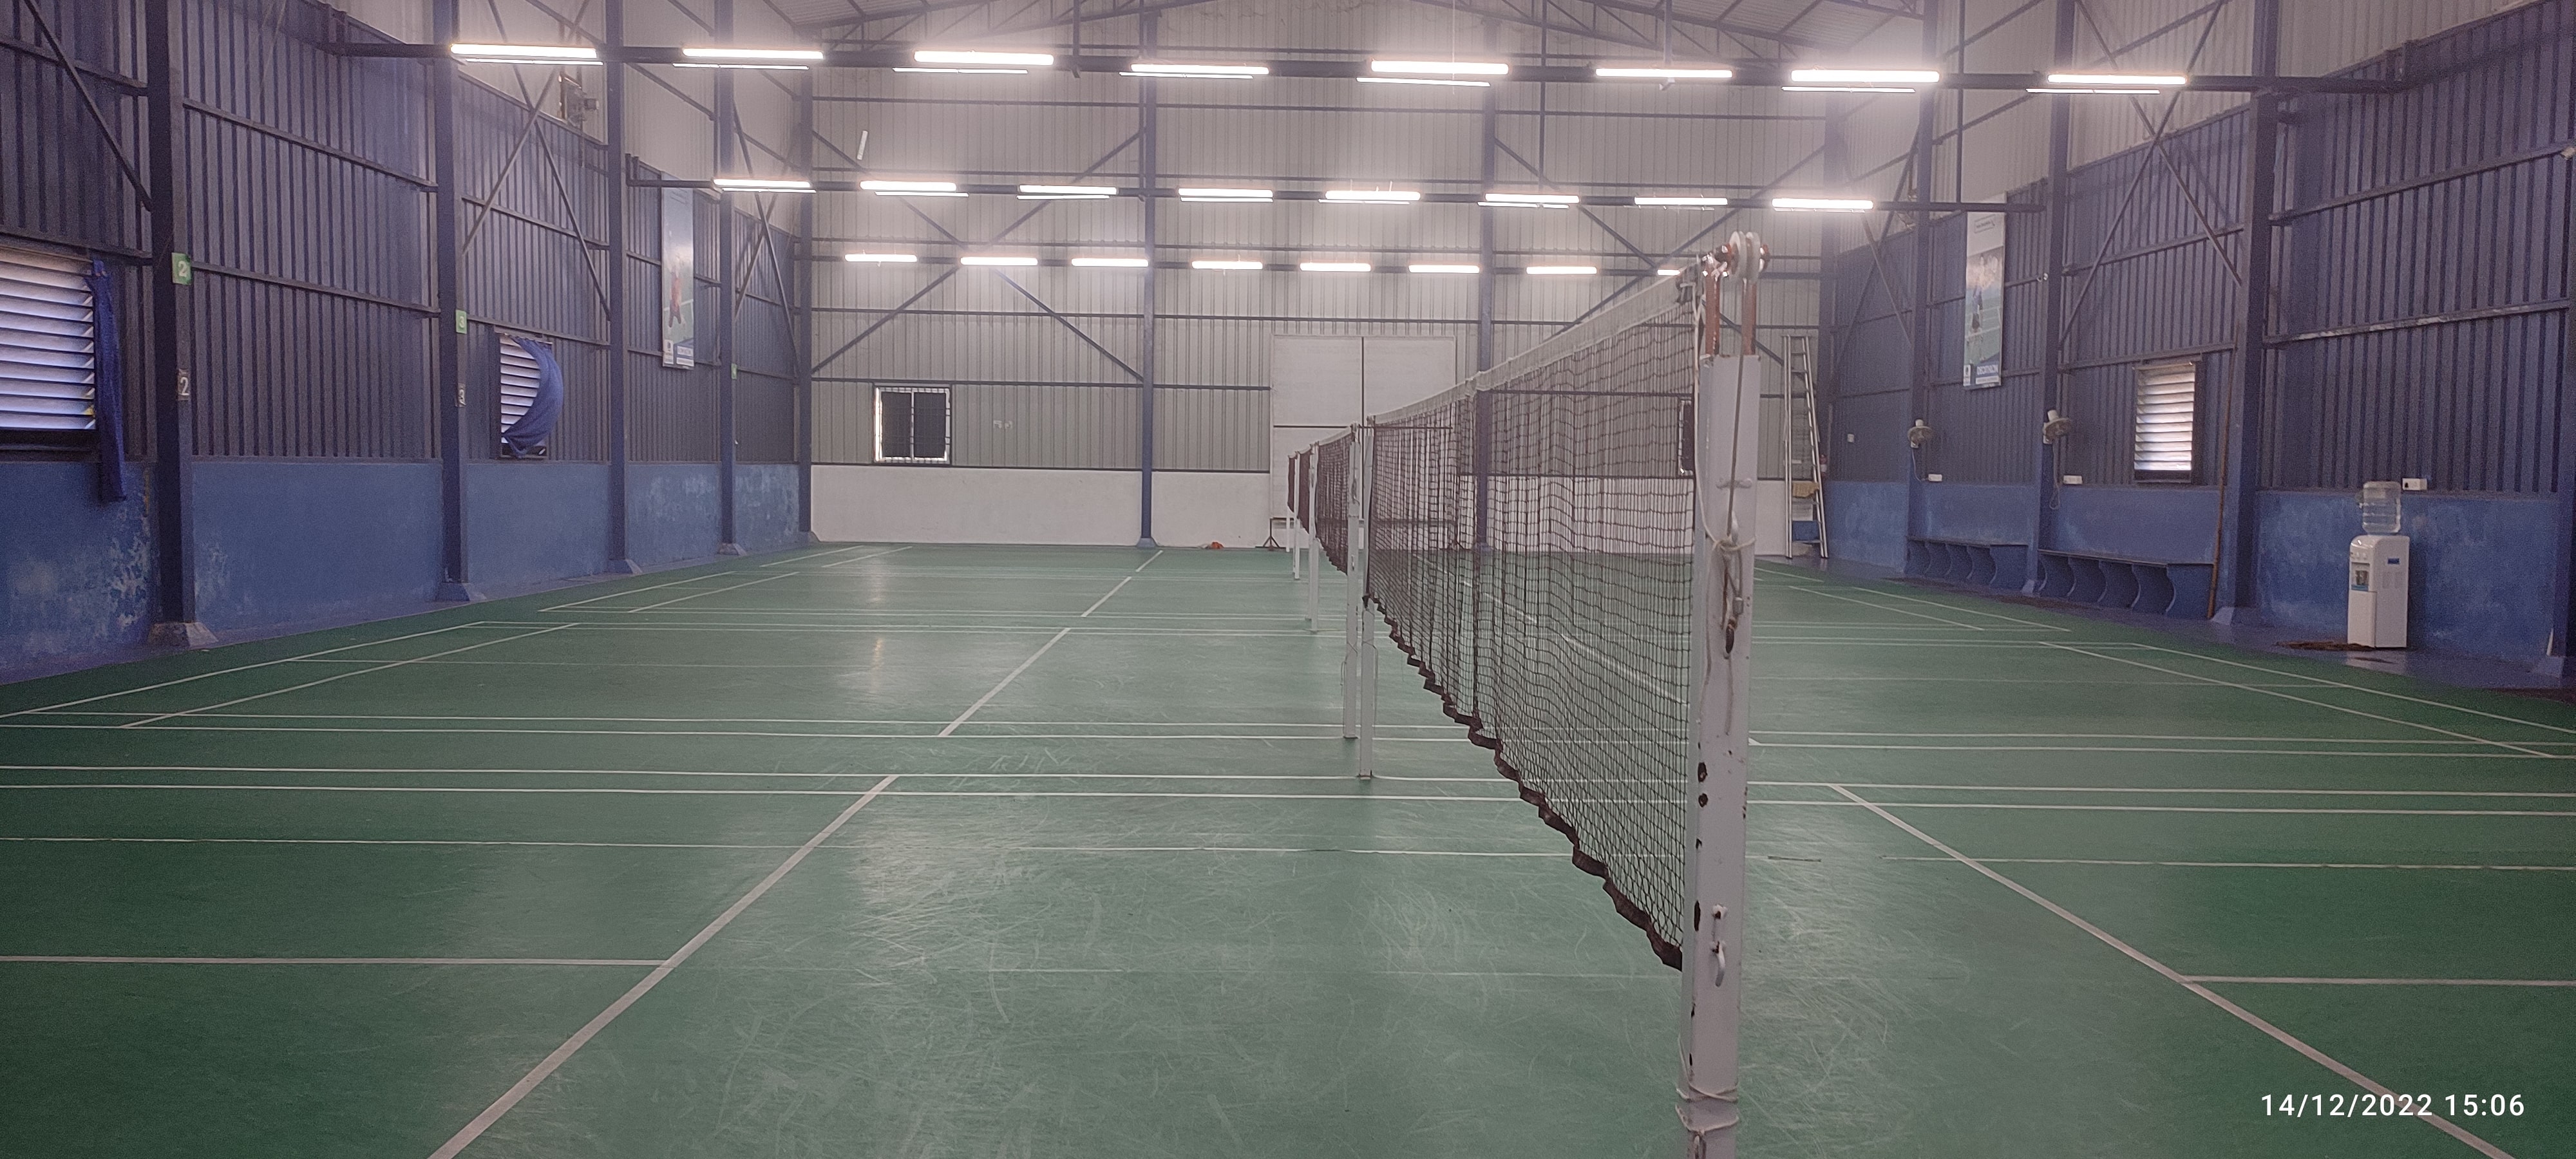 FAME Badminton Academy